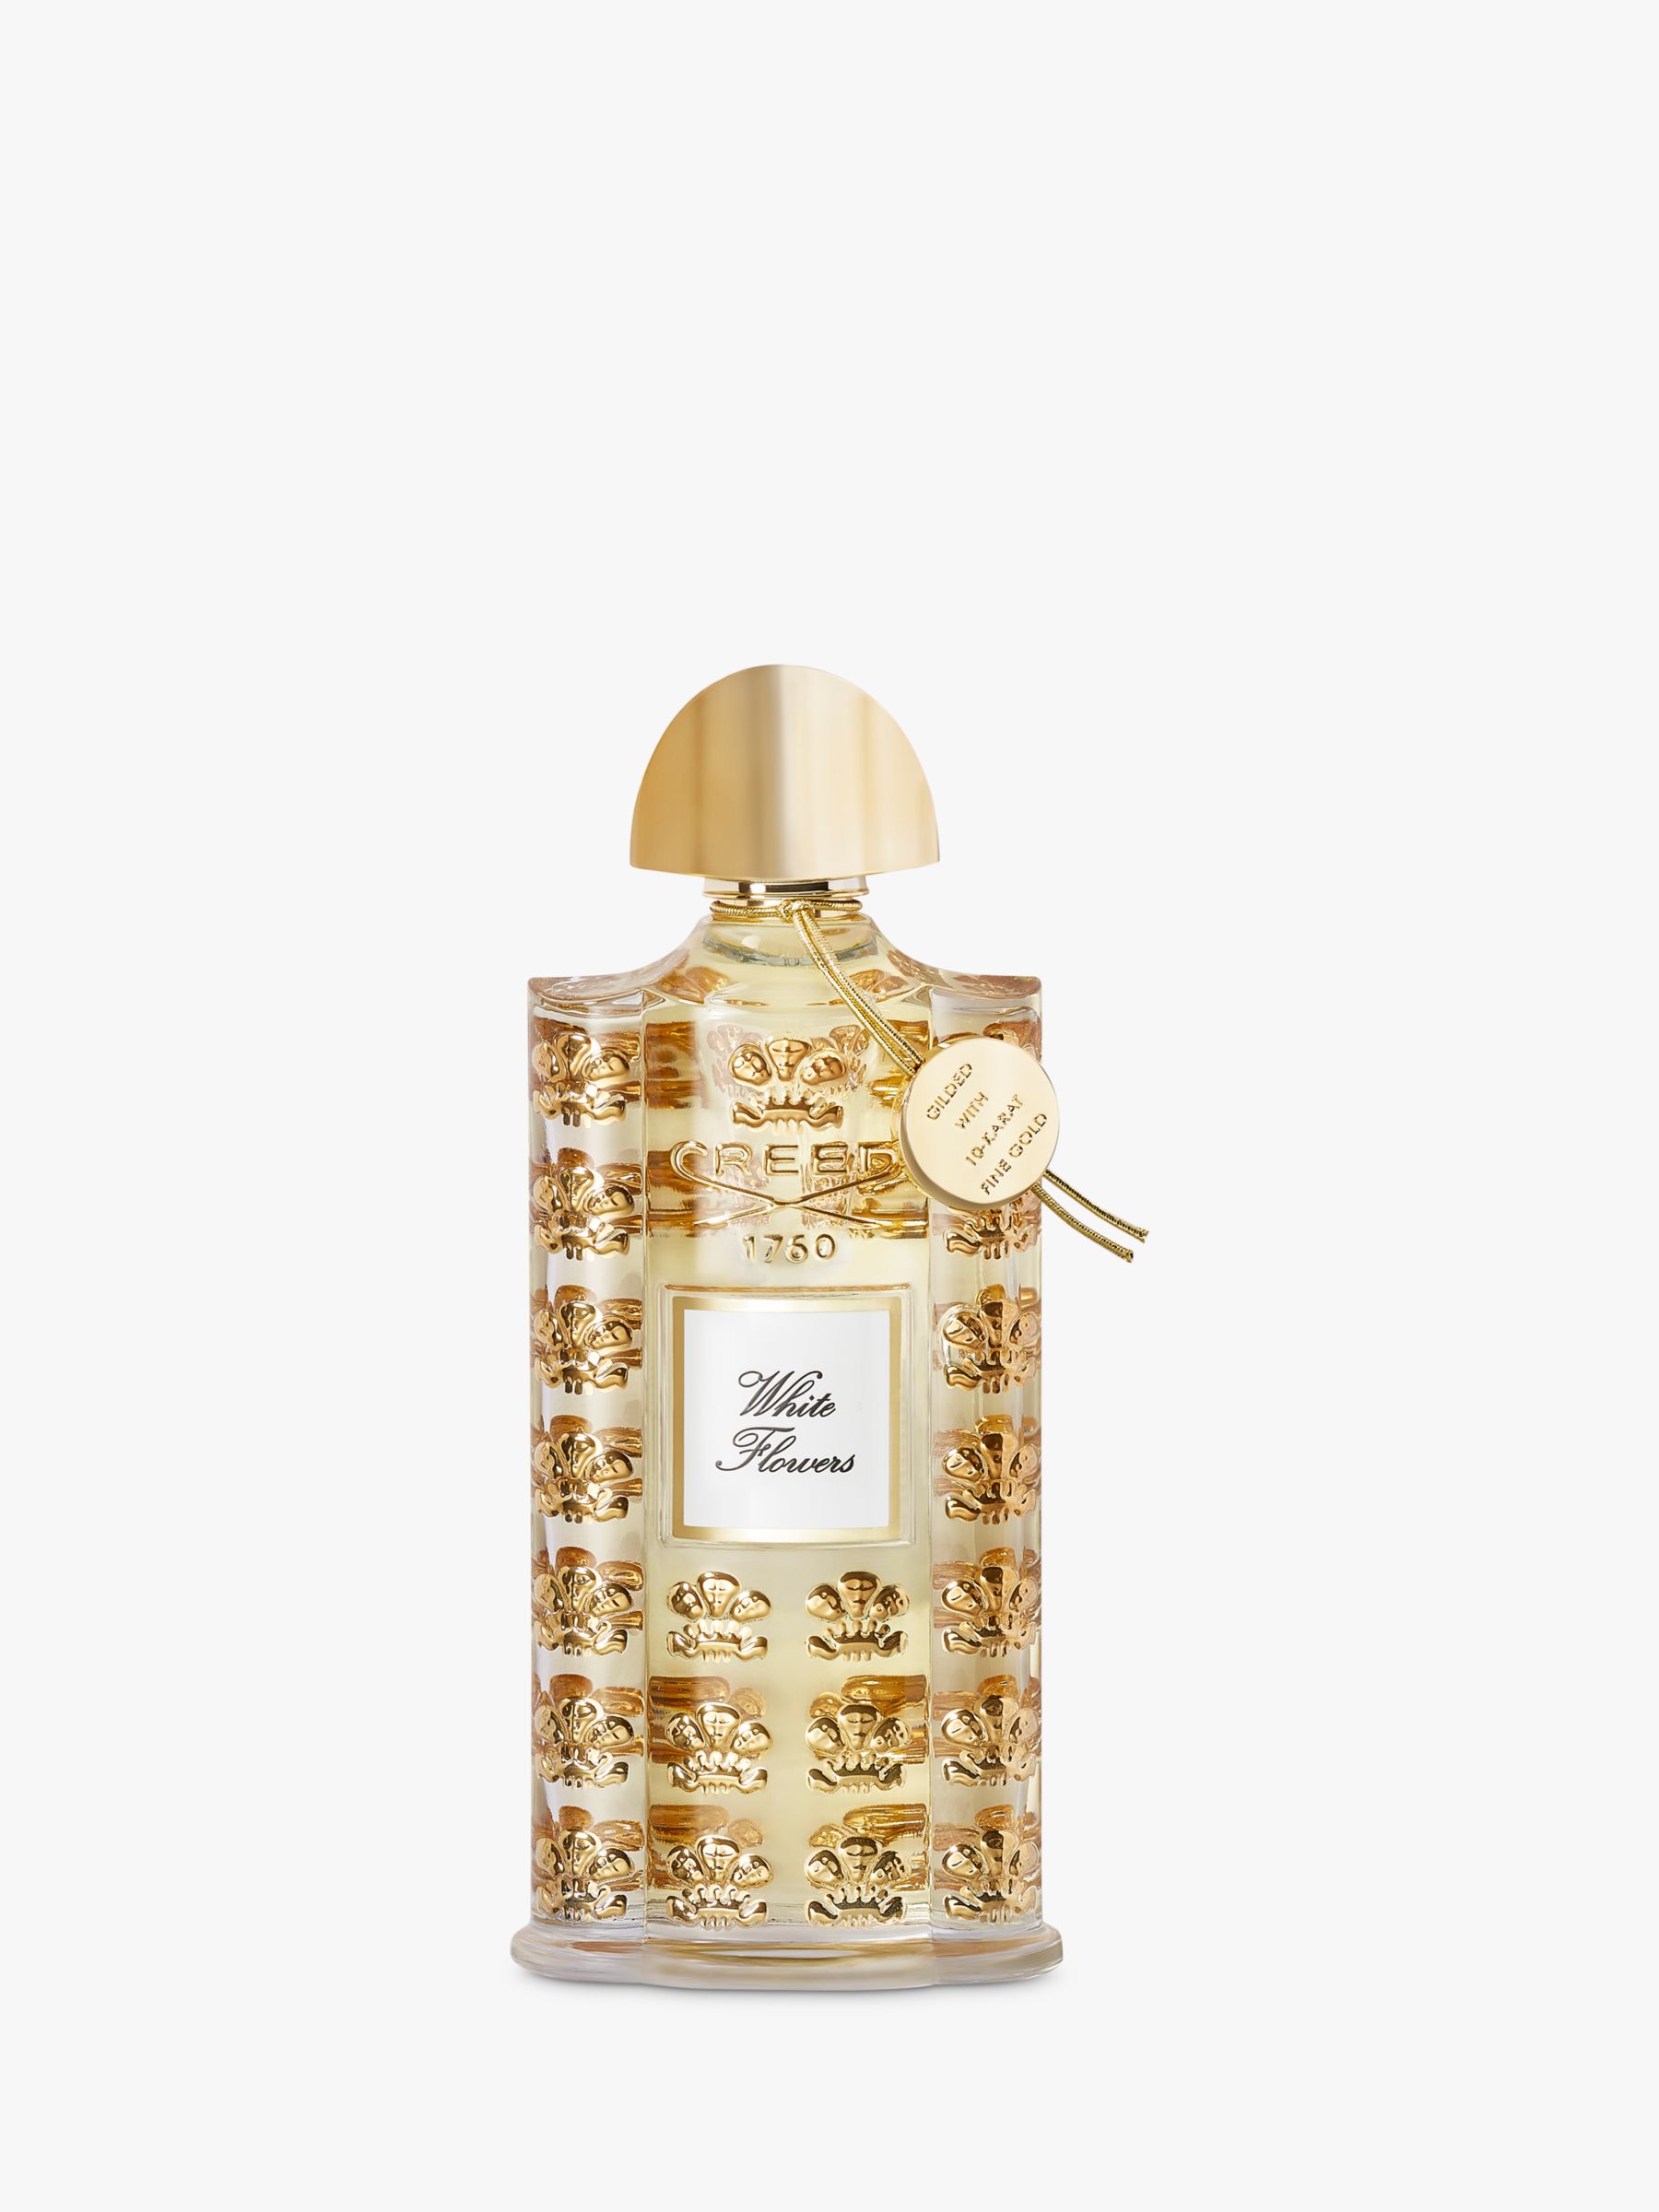 CREED Royal Exclusives White Flowers Eau de Parfum, 75ml 1